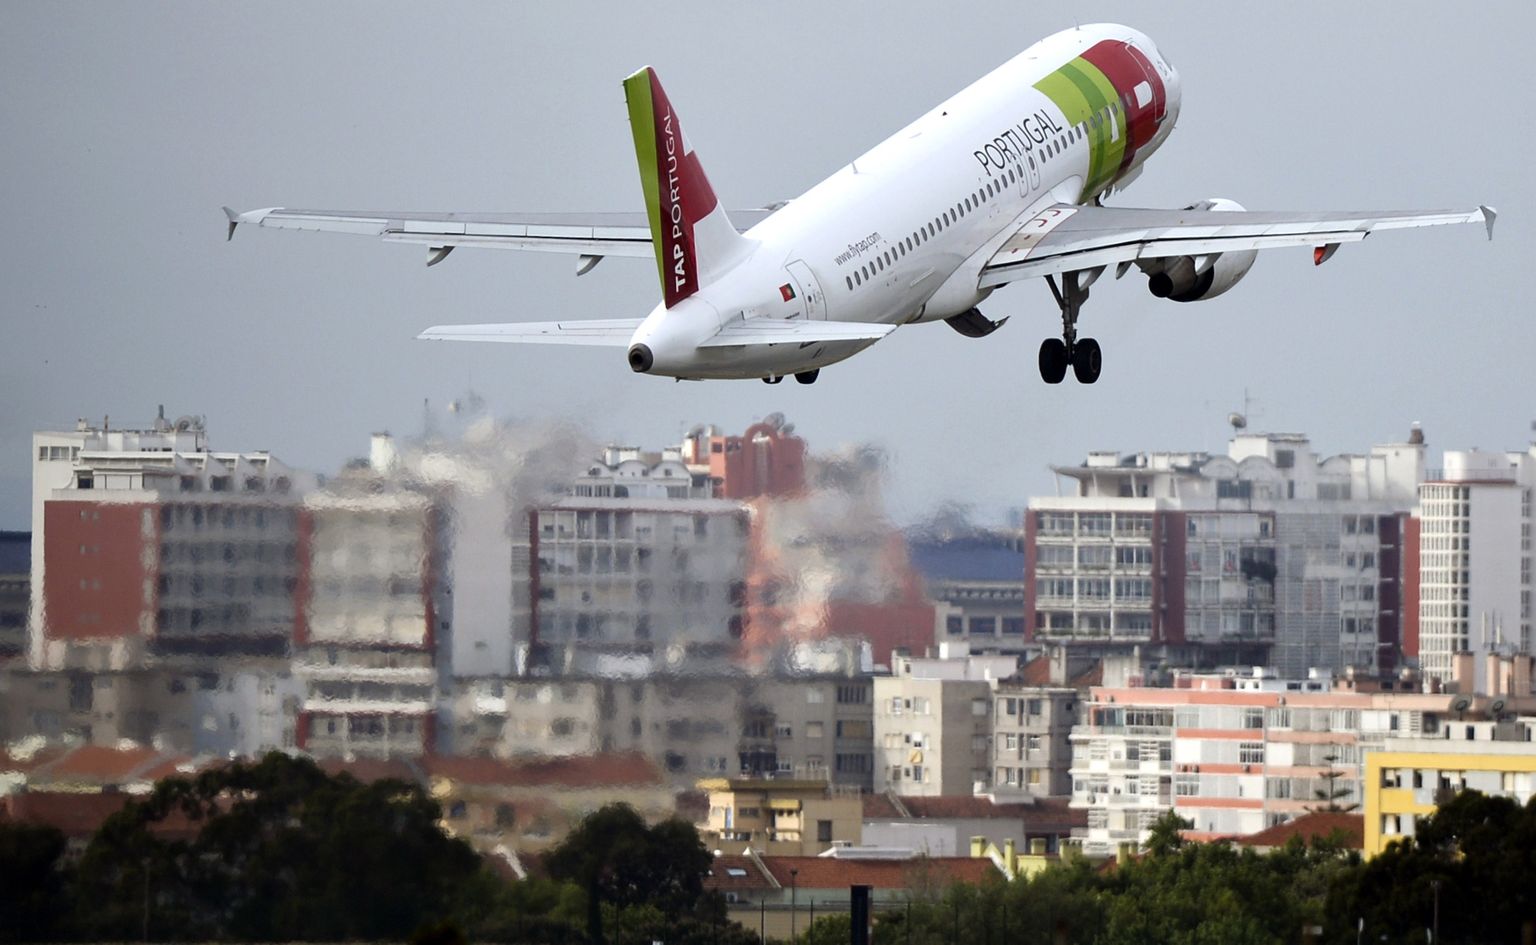 TAPi lennufirma lennuk tõusmas Lissabonist õhku.